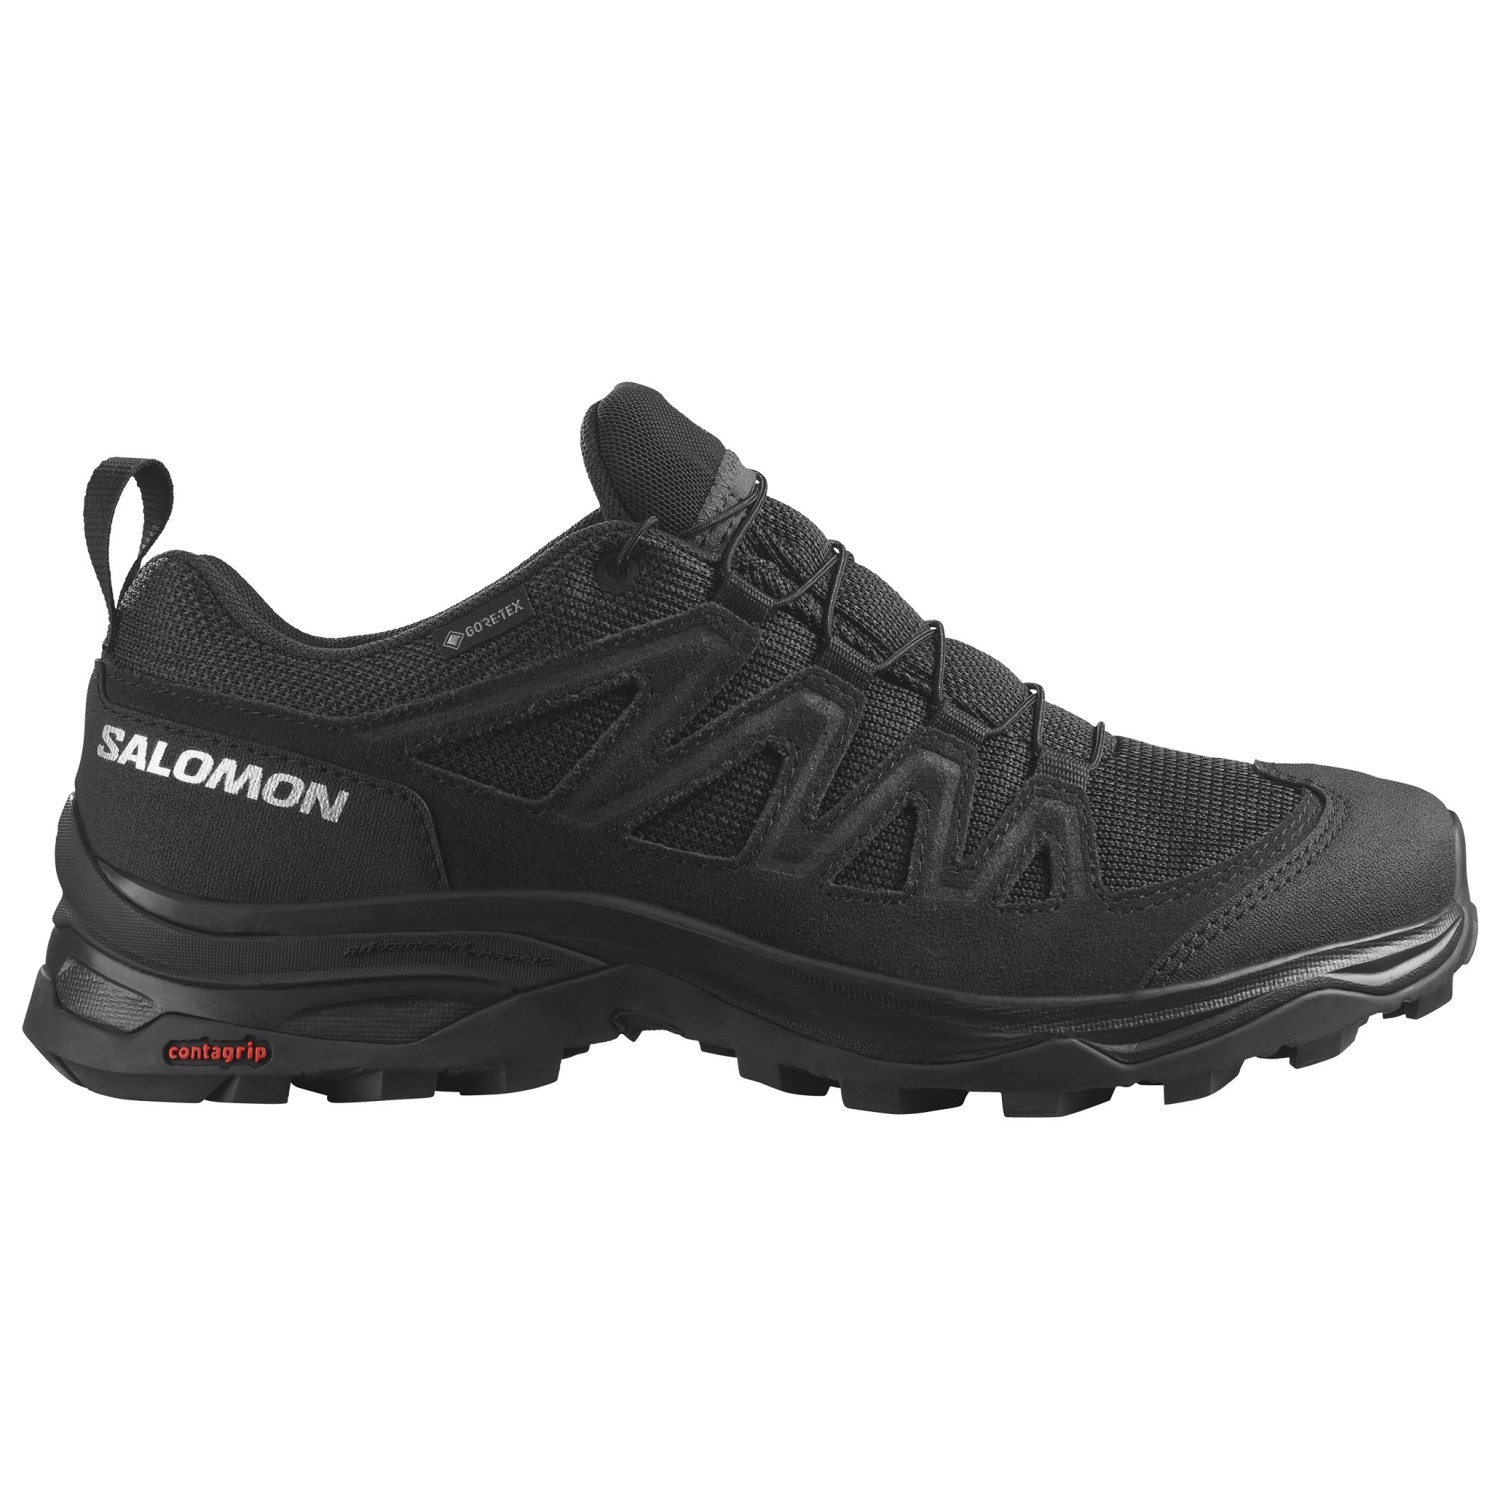 Мультиспортивная обувь Salomon Women's X Ward Leather GTX, цвет Black/Black/Black